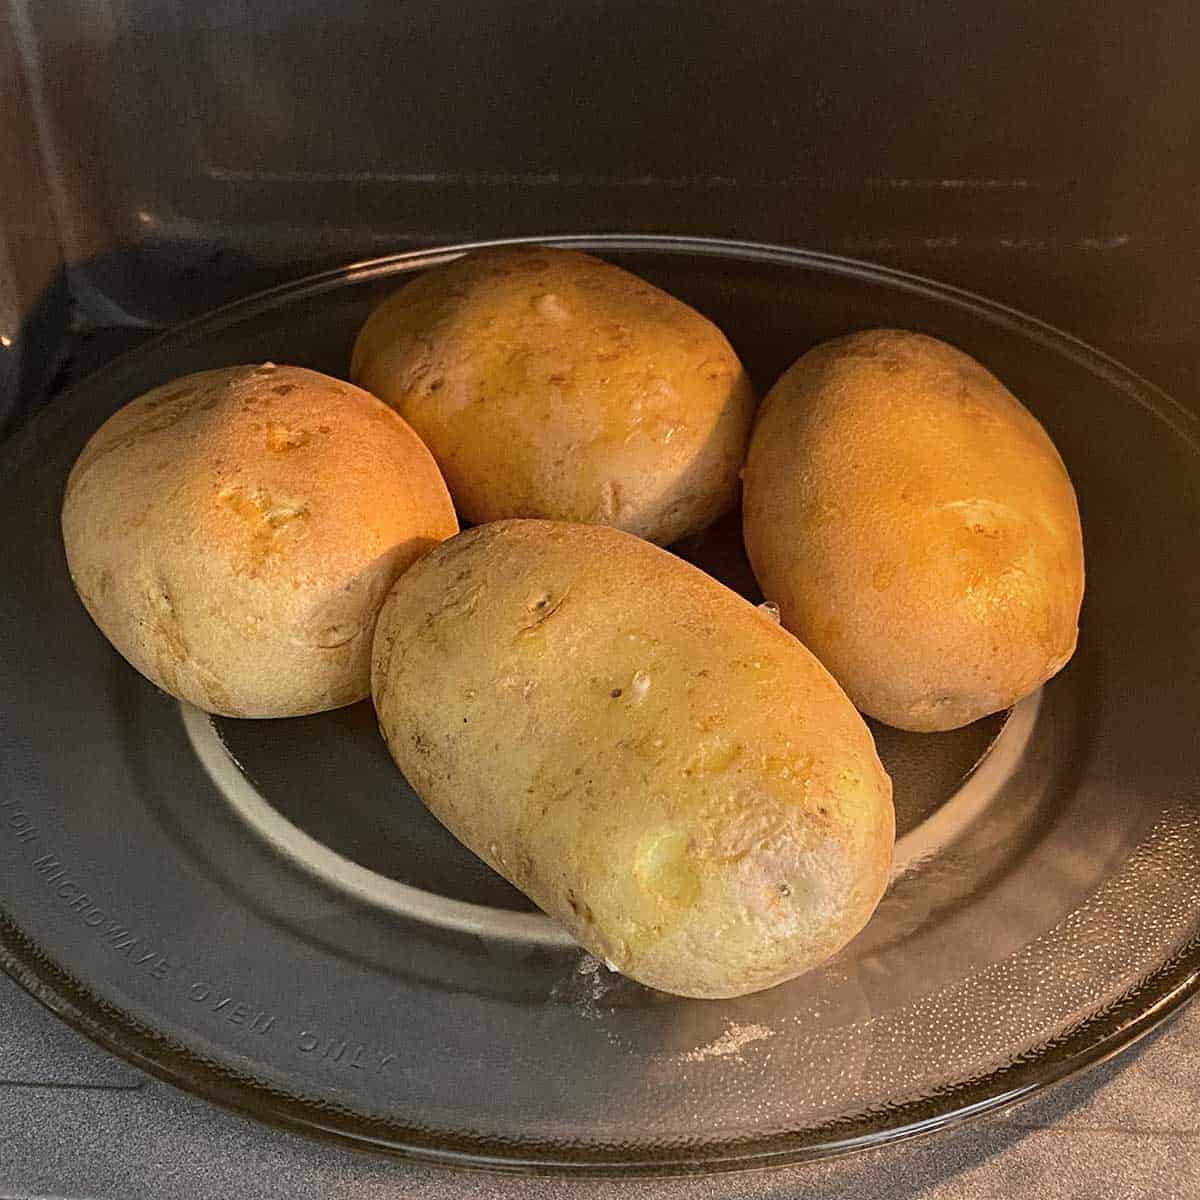 4 potatoes inside a microwave.